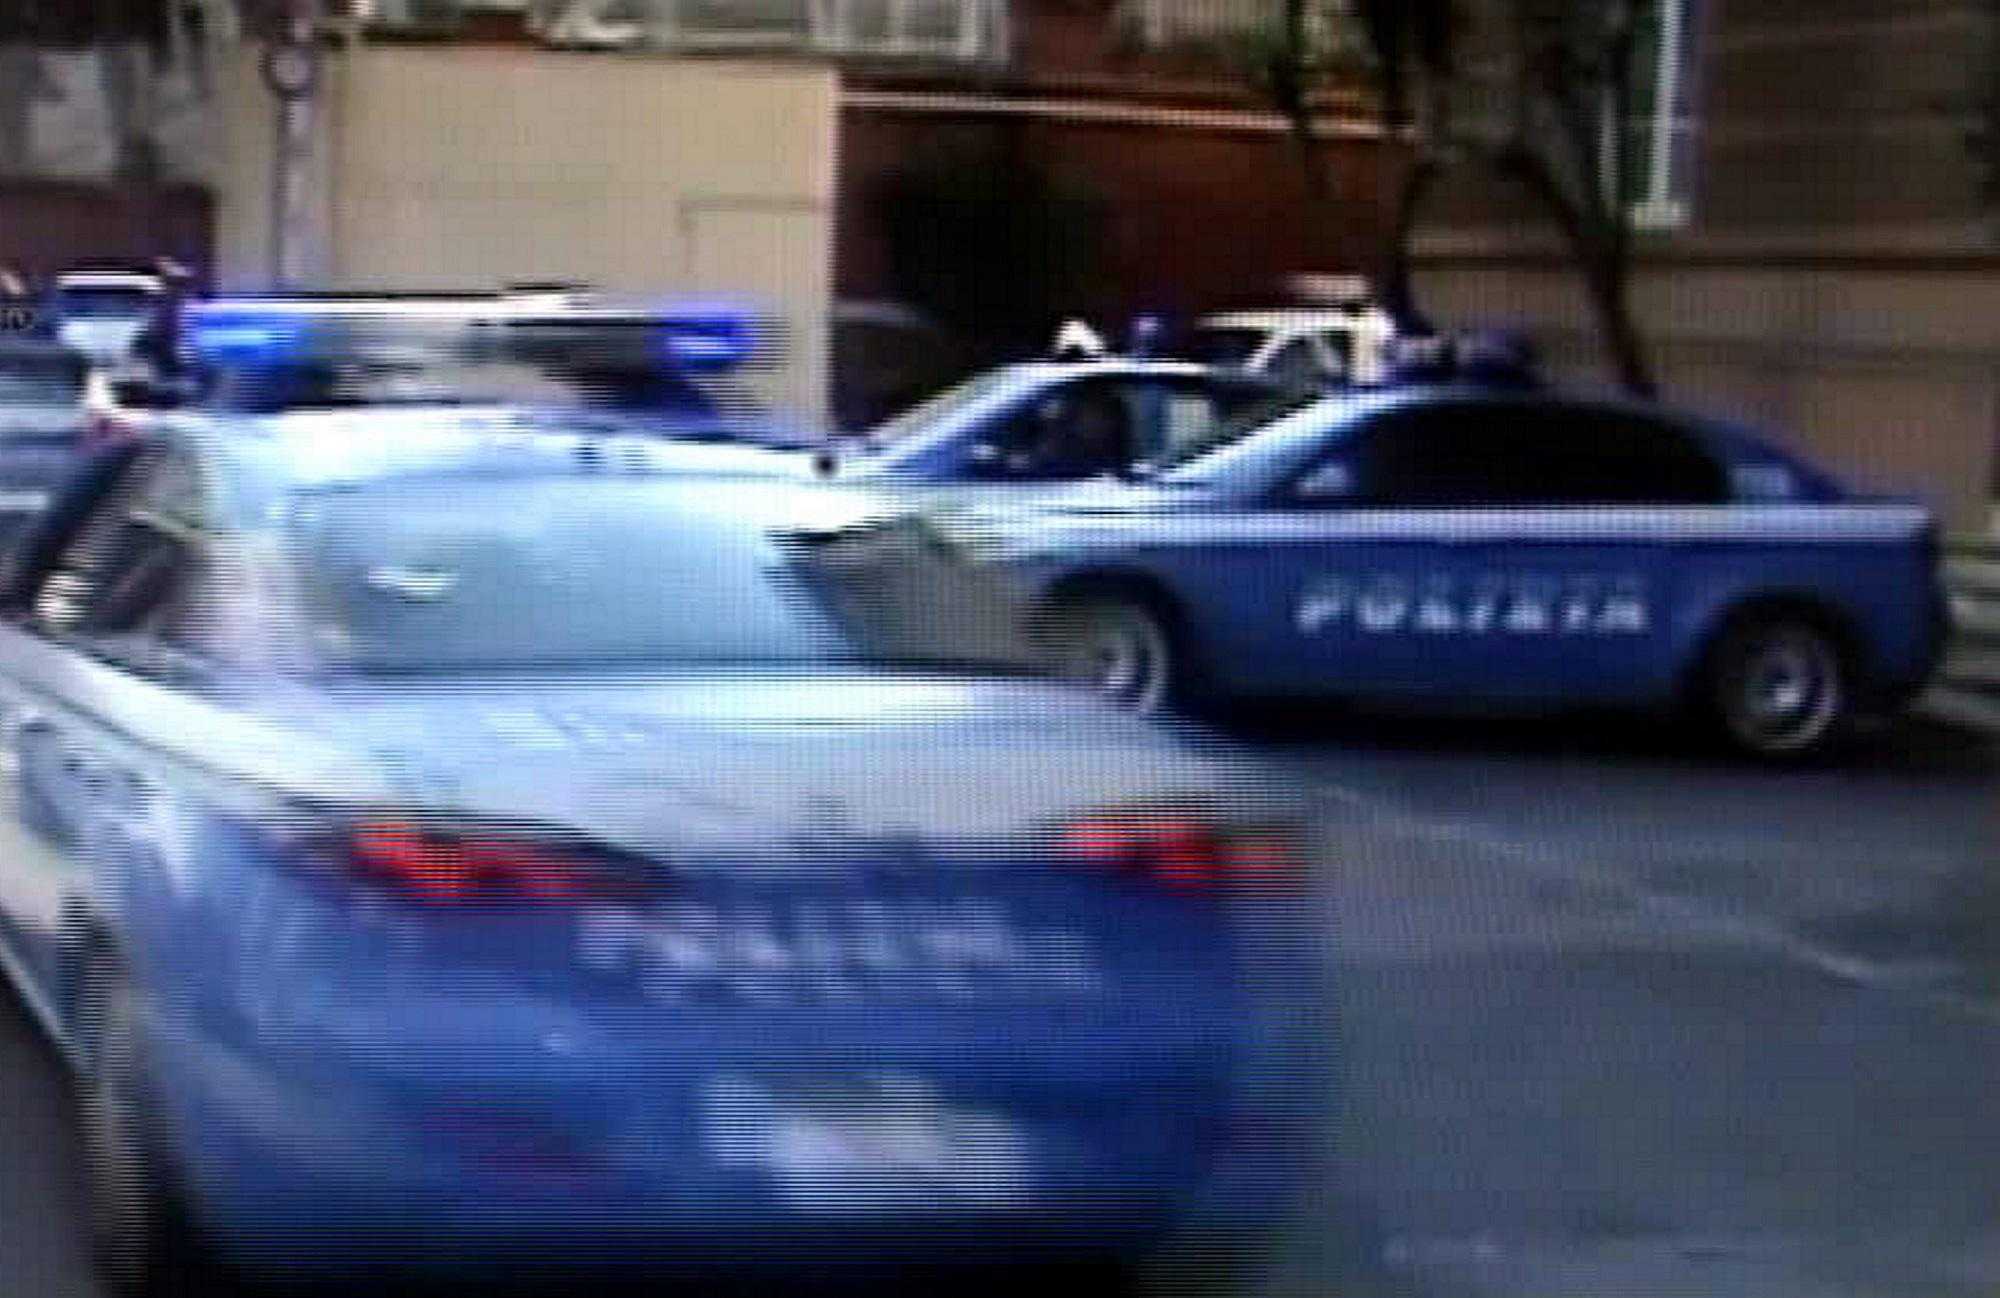 Polizia, 103 misure in tutta Italia, anche per mafia e droga. Colpite organizzazioni criminali